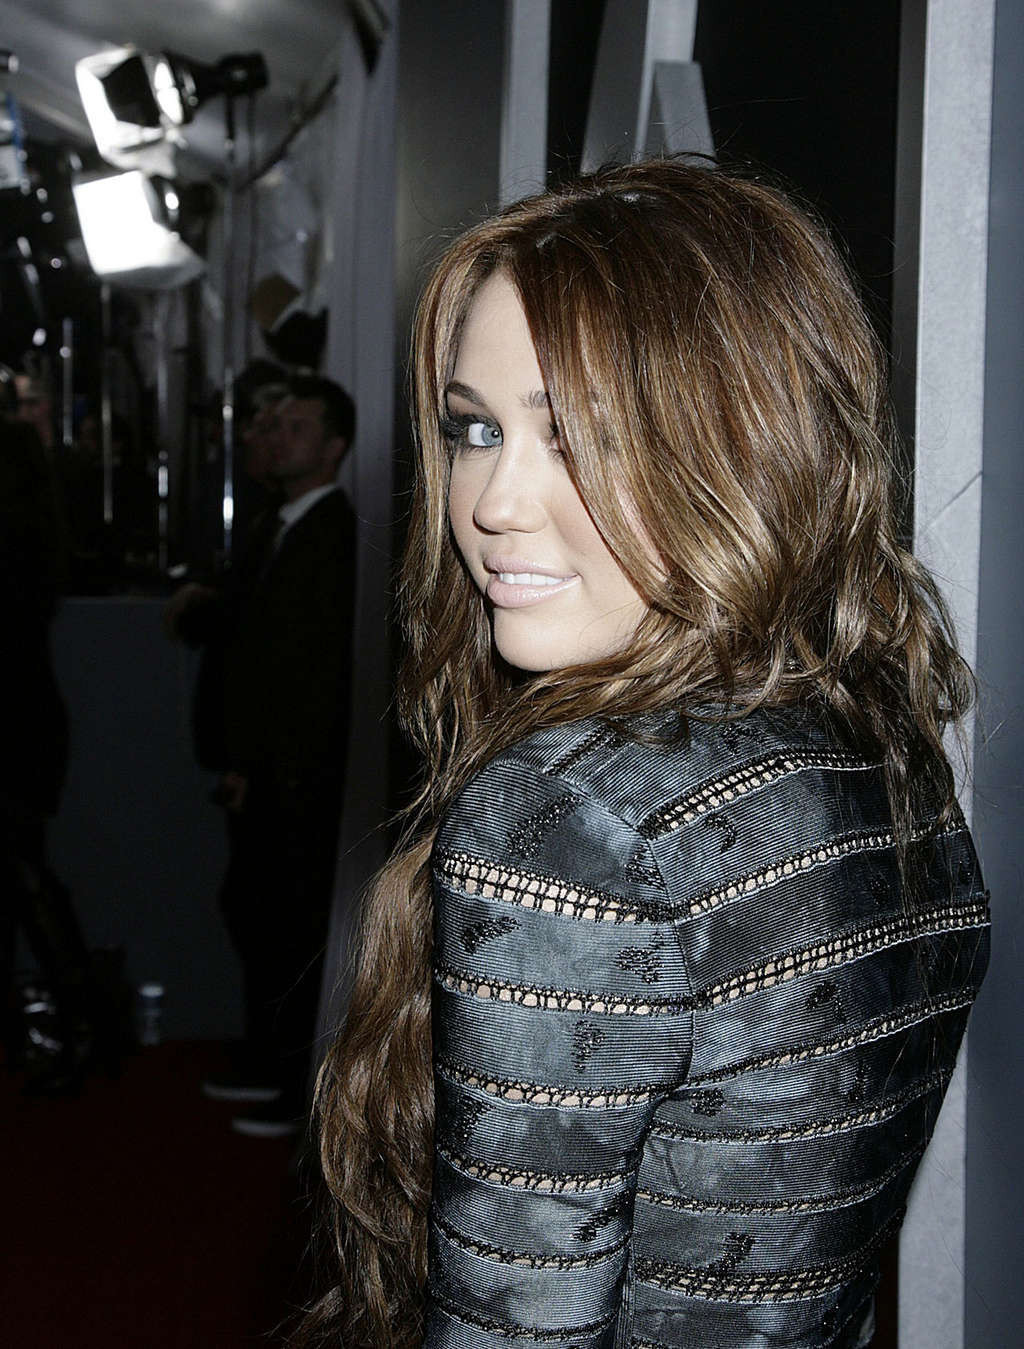 Miley cyrus très leggy en mini-jupe et jupe haute en voiture photos paparazzi
 #75361421